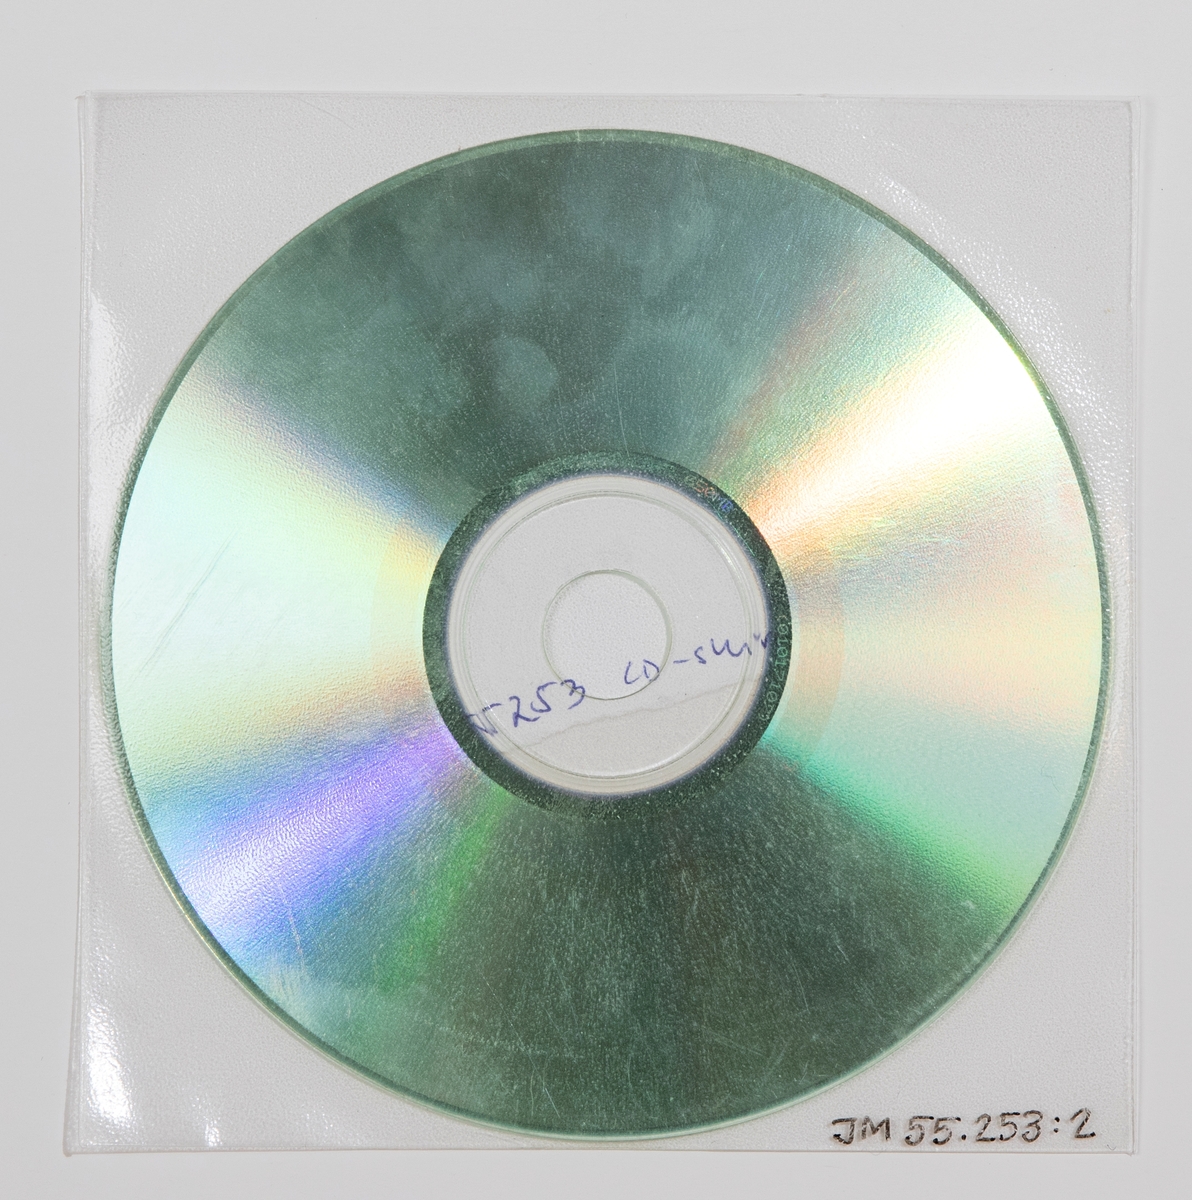 CD-skiva i plastficka. Inne i plastfickan ligger en handskriven papperslapp med texten: "So Divine 1 ny låt".

JM 55253:1, Skiva
JM 55253:2, Plastficka